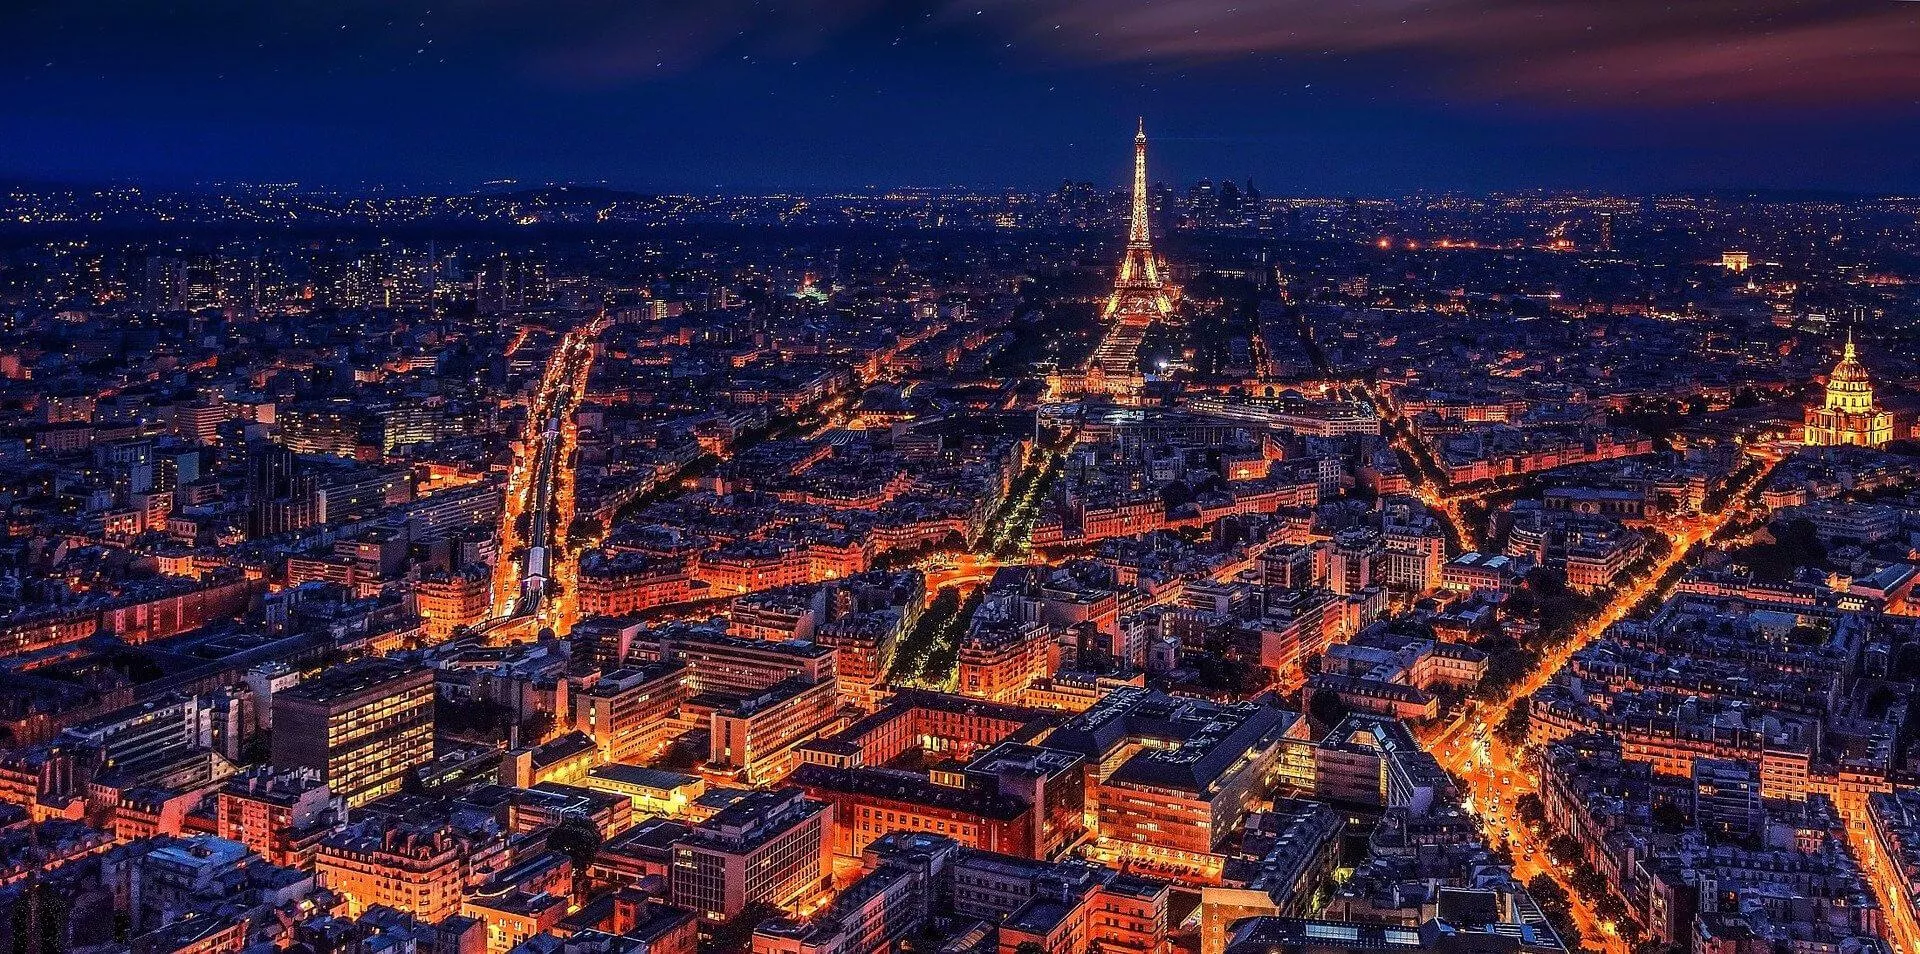 Parijs vermijden met deze alternatieve route naar Zuid Frankrijk